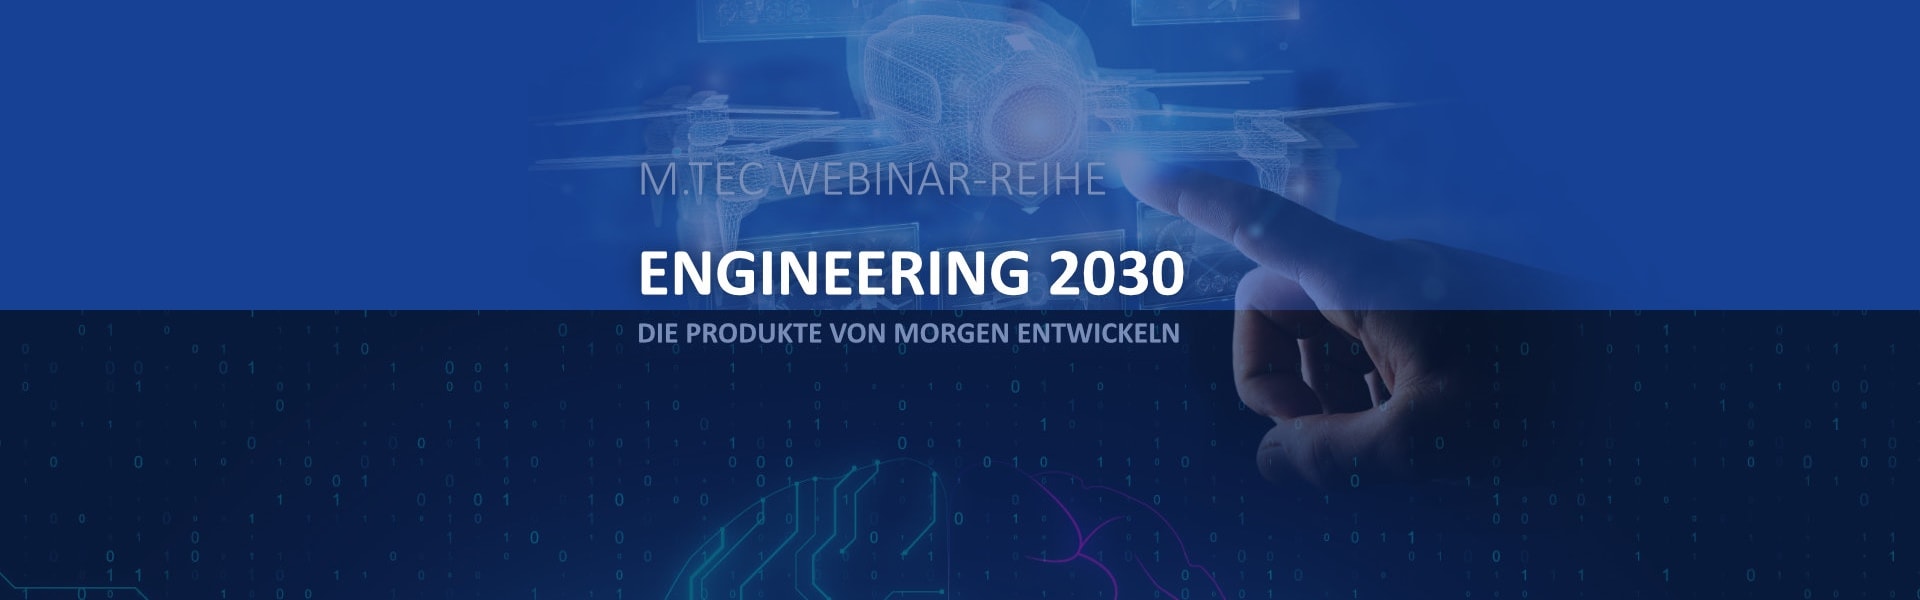 ENGINEERING 2030 – Die Produkte von Morgen entwickeln – M.TEC Webinar-Reihe